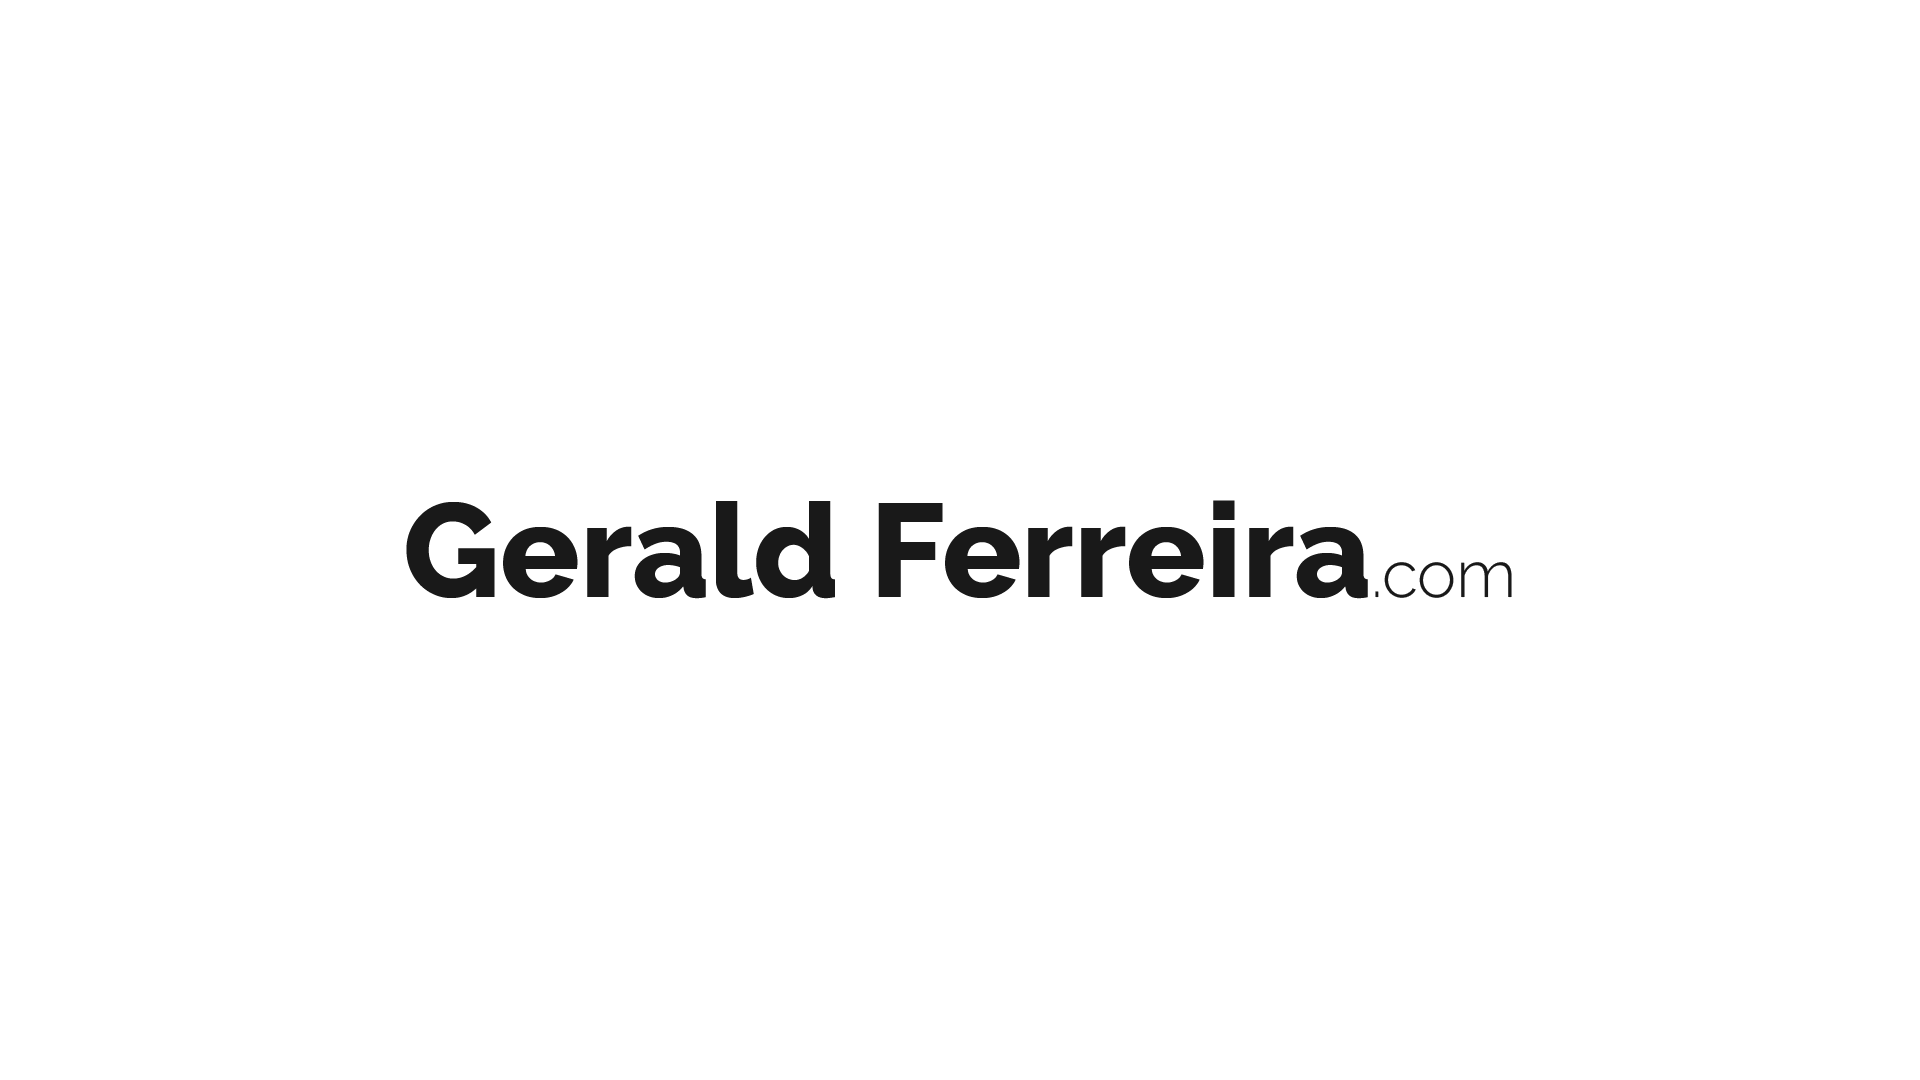 Gerald Ferreria 01